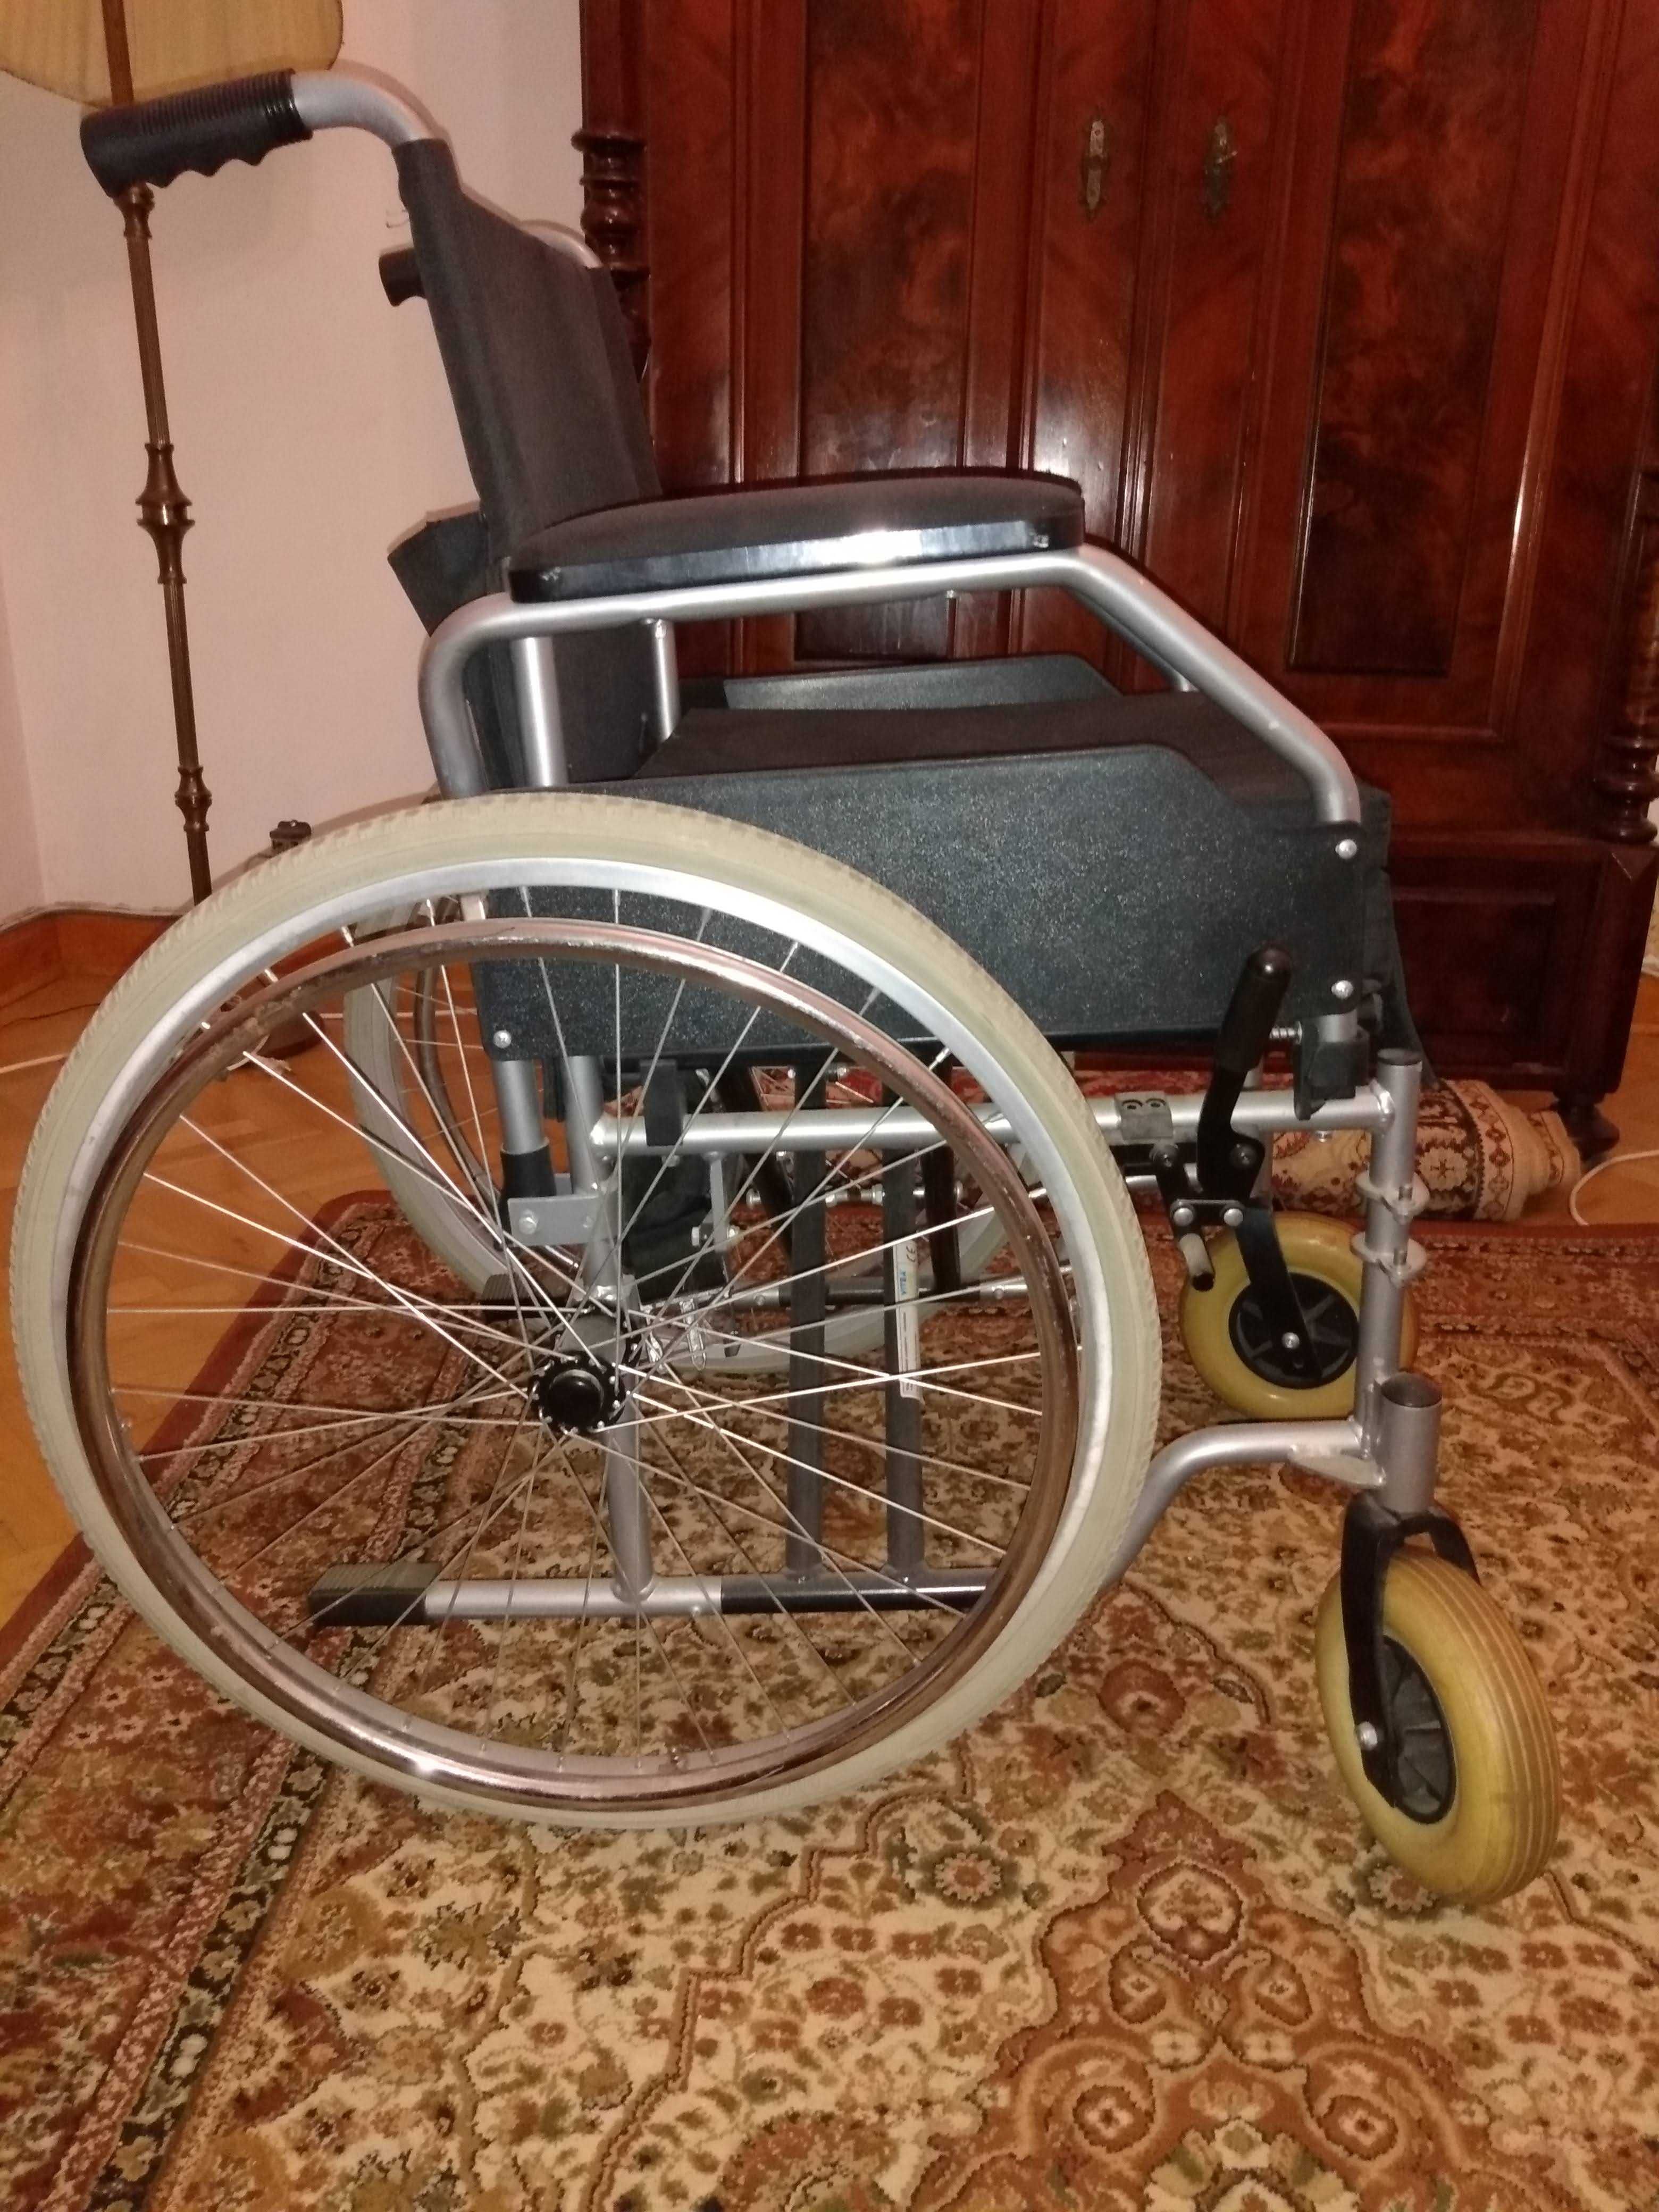 Wózek inwalidzki VITEA CARE, mało używany,w dobrym stanie.Lekki